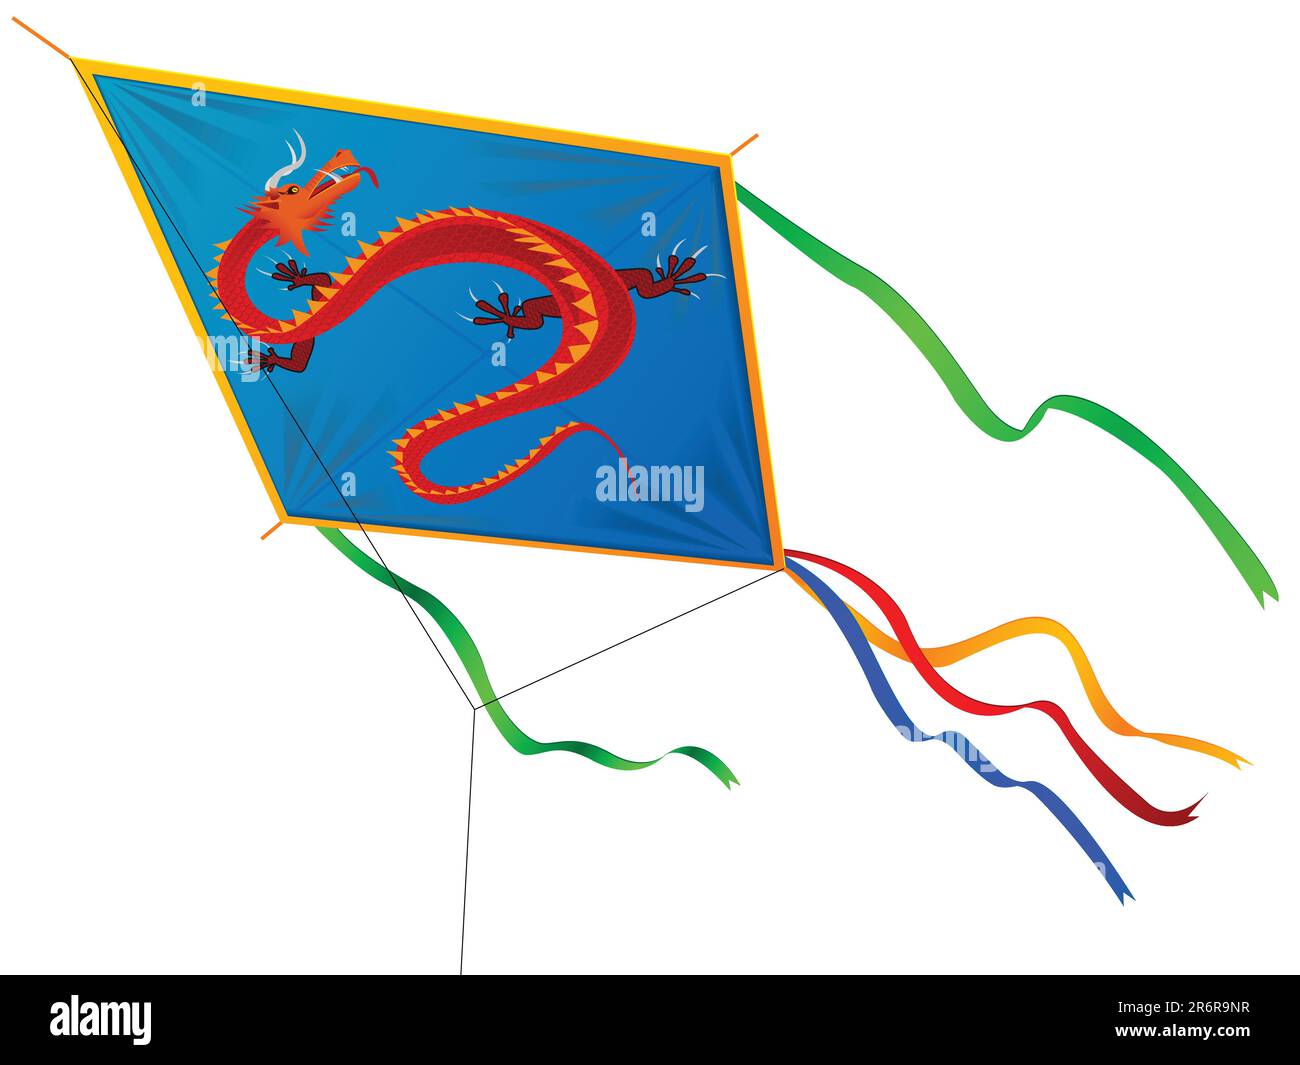 Cerf-volant avec le dragon chinois et bandes dans un vecteur Illustration de Vecteur